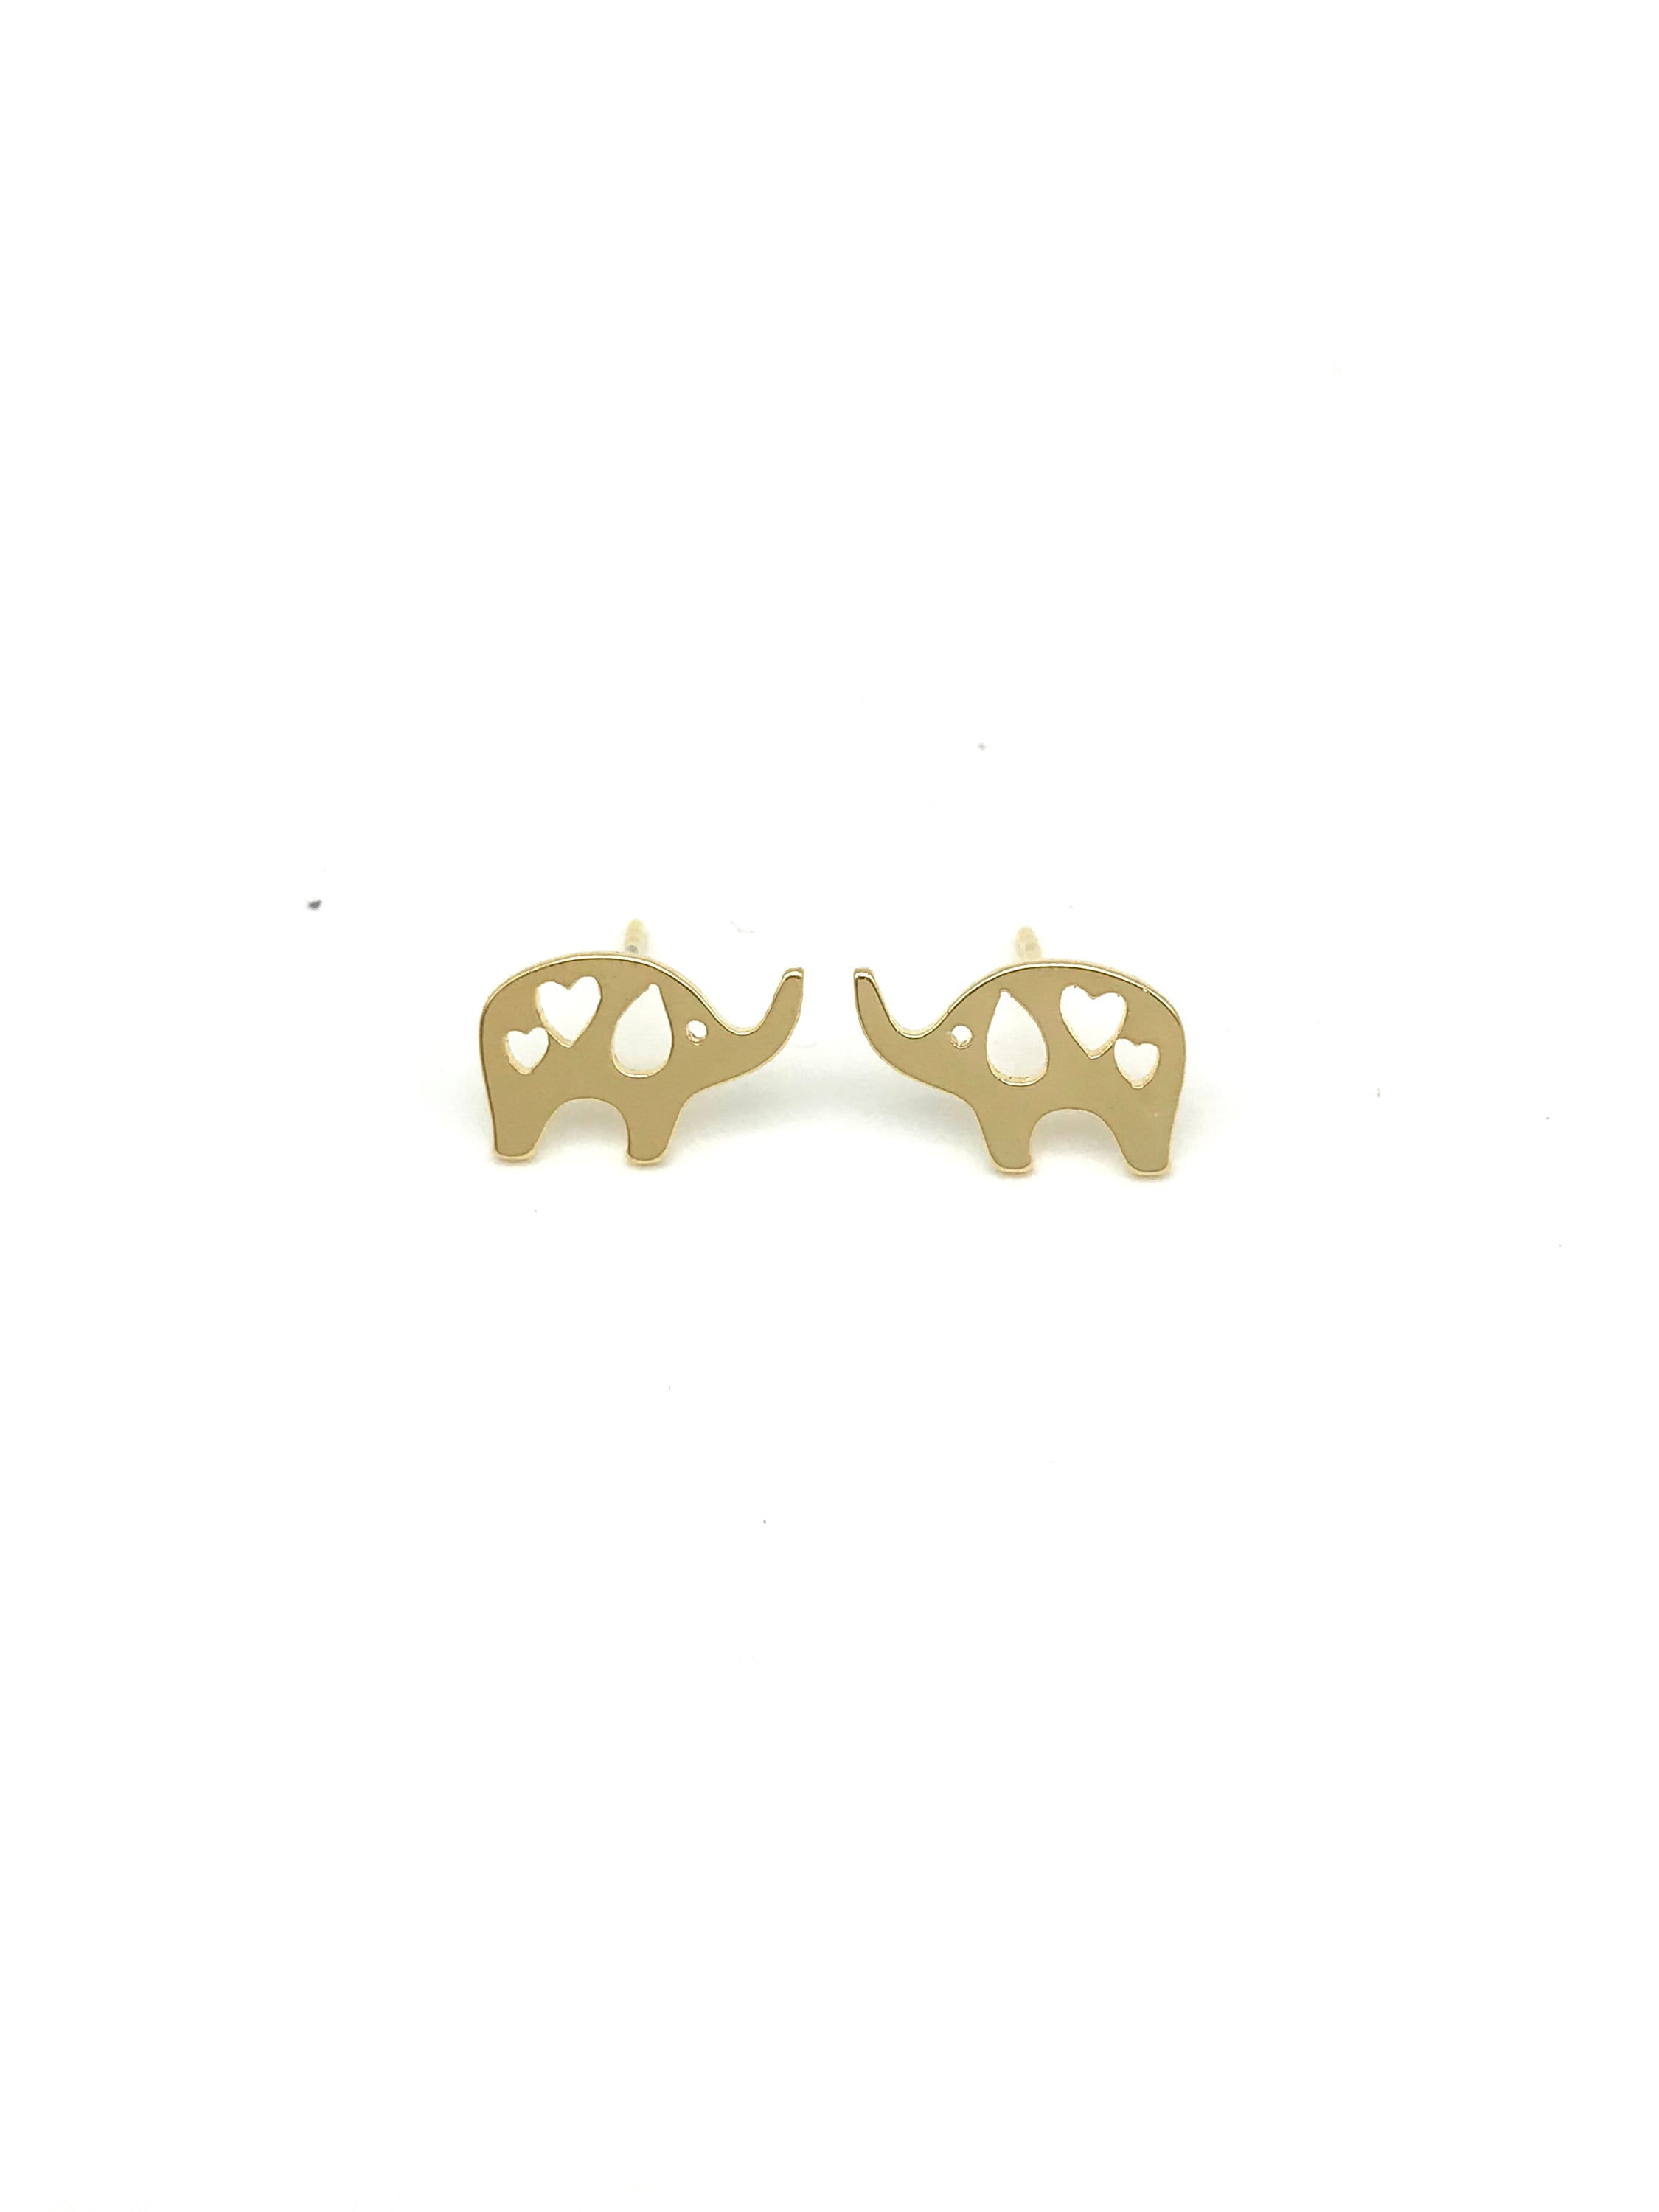 ELEPHANT EARRINGS !! Gold Earrings, cute earrings, Stud Earrings, earrings